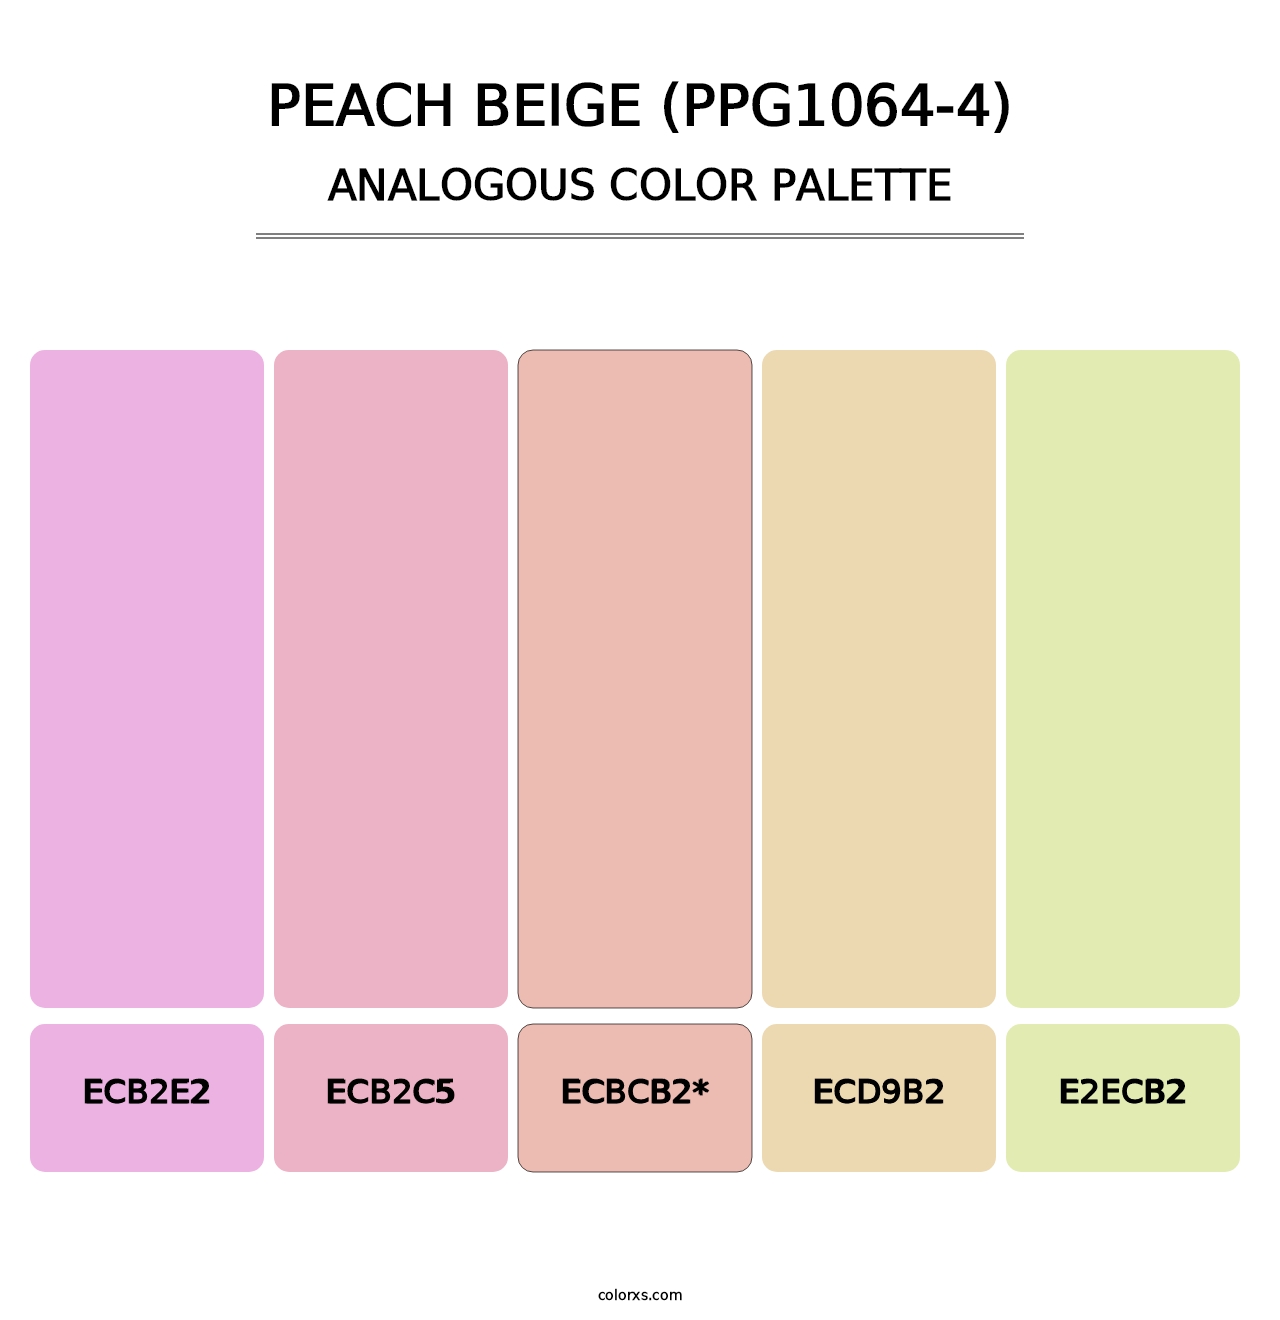 Peach Beige (PPG1064-4) - Analogous Color Palette